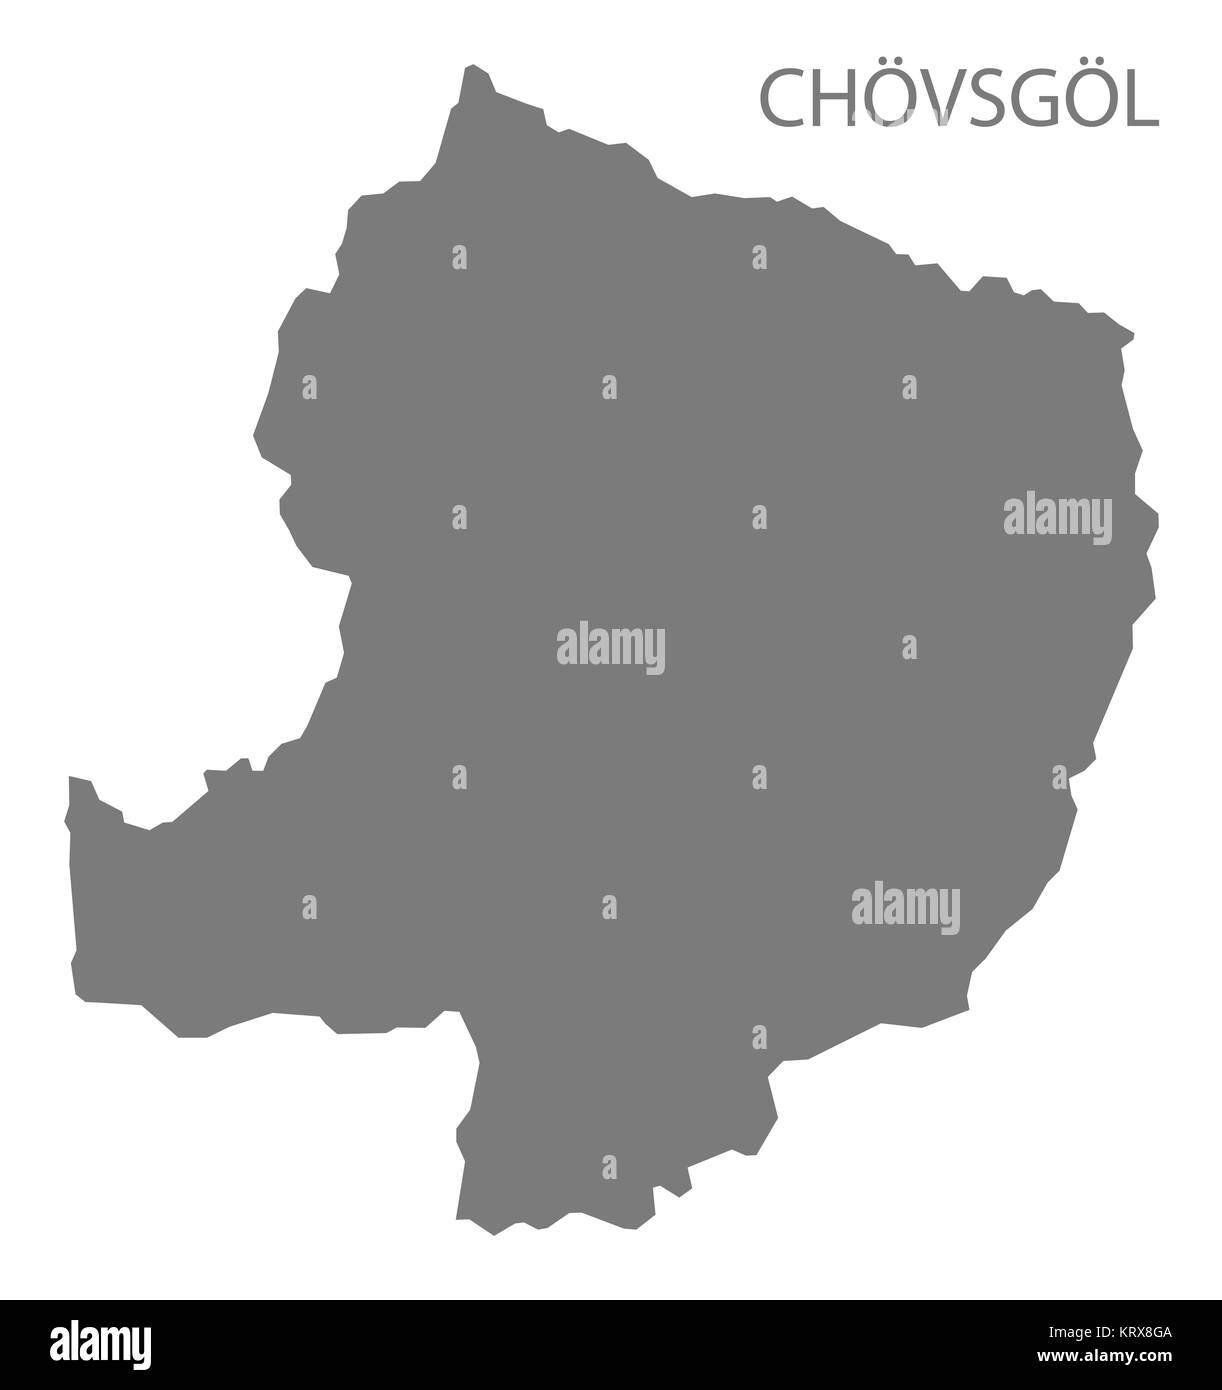 Chovsgol Mongolei Karte grau Stockfoto